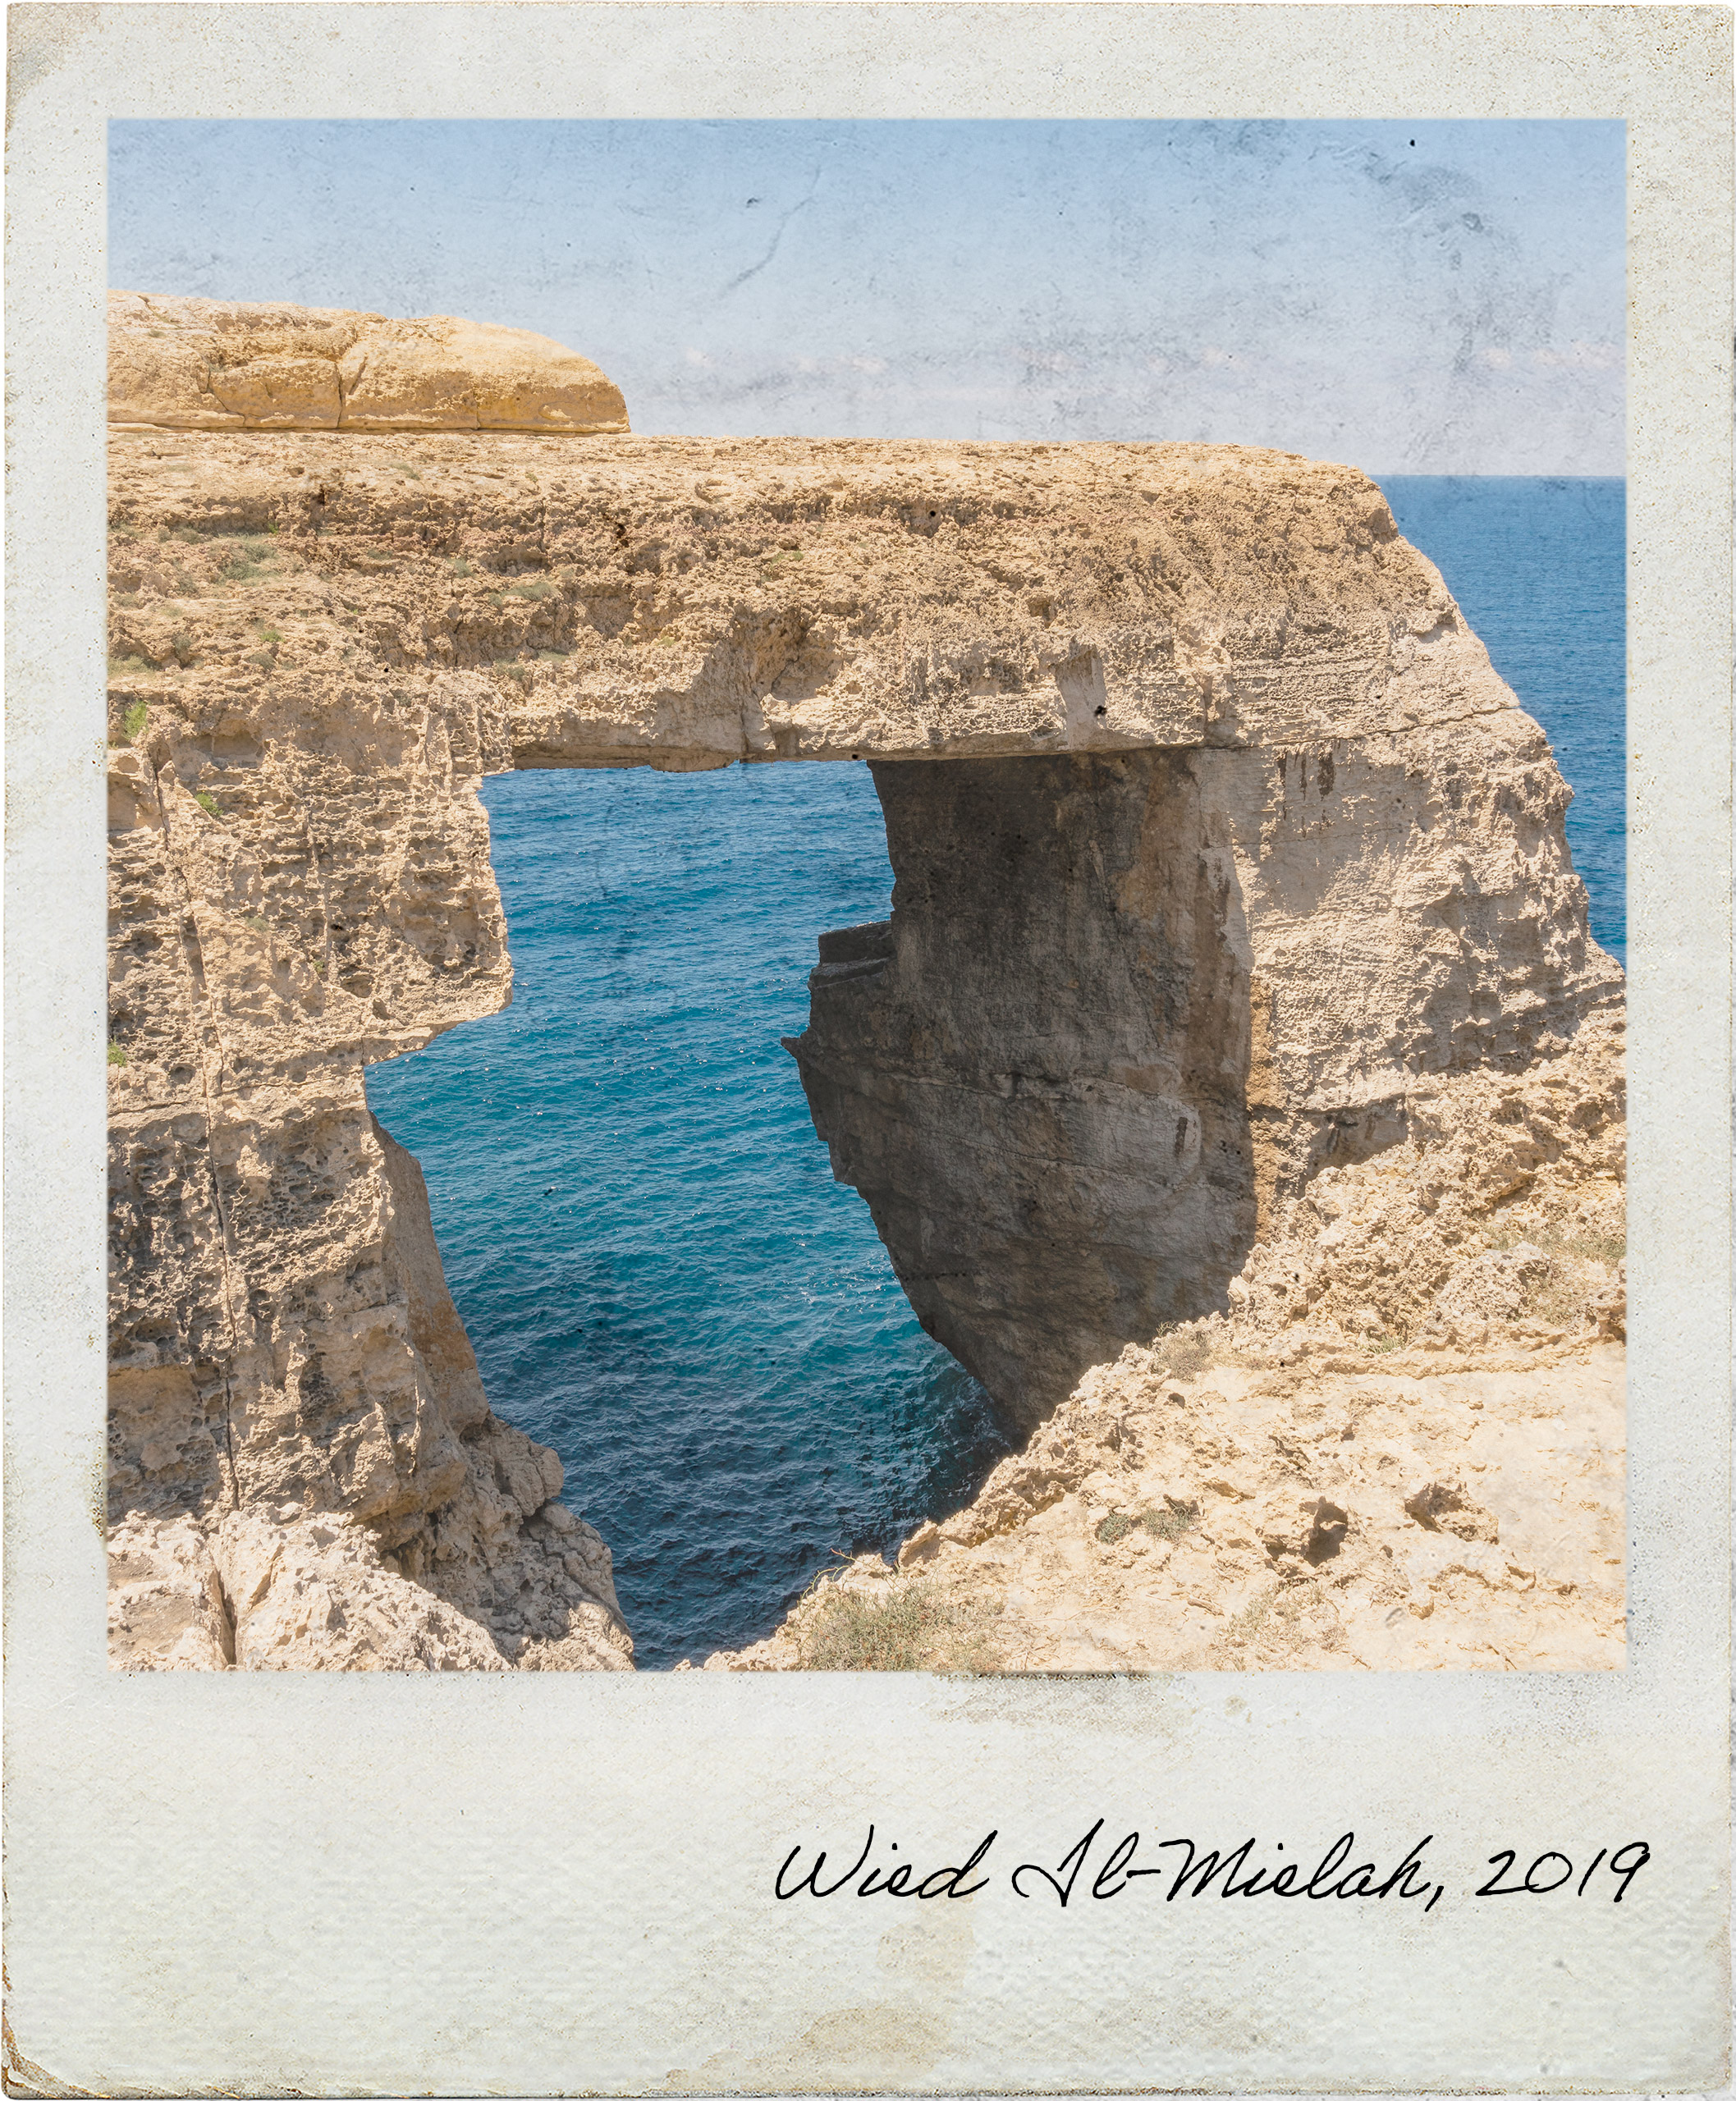 Wied Il-Mielaħ, a lesser known window in Malta